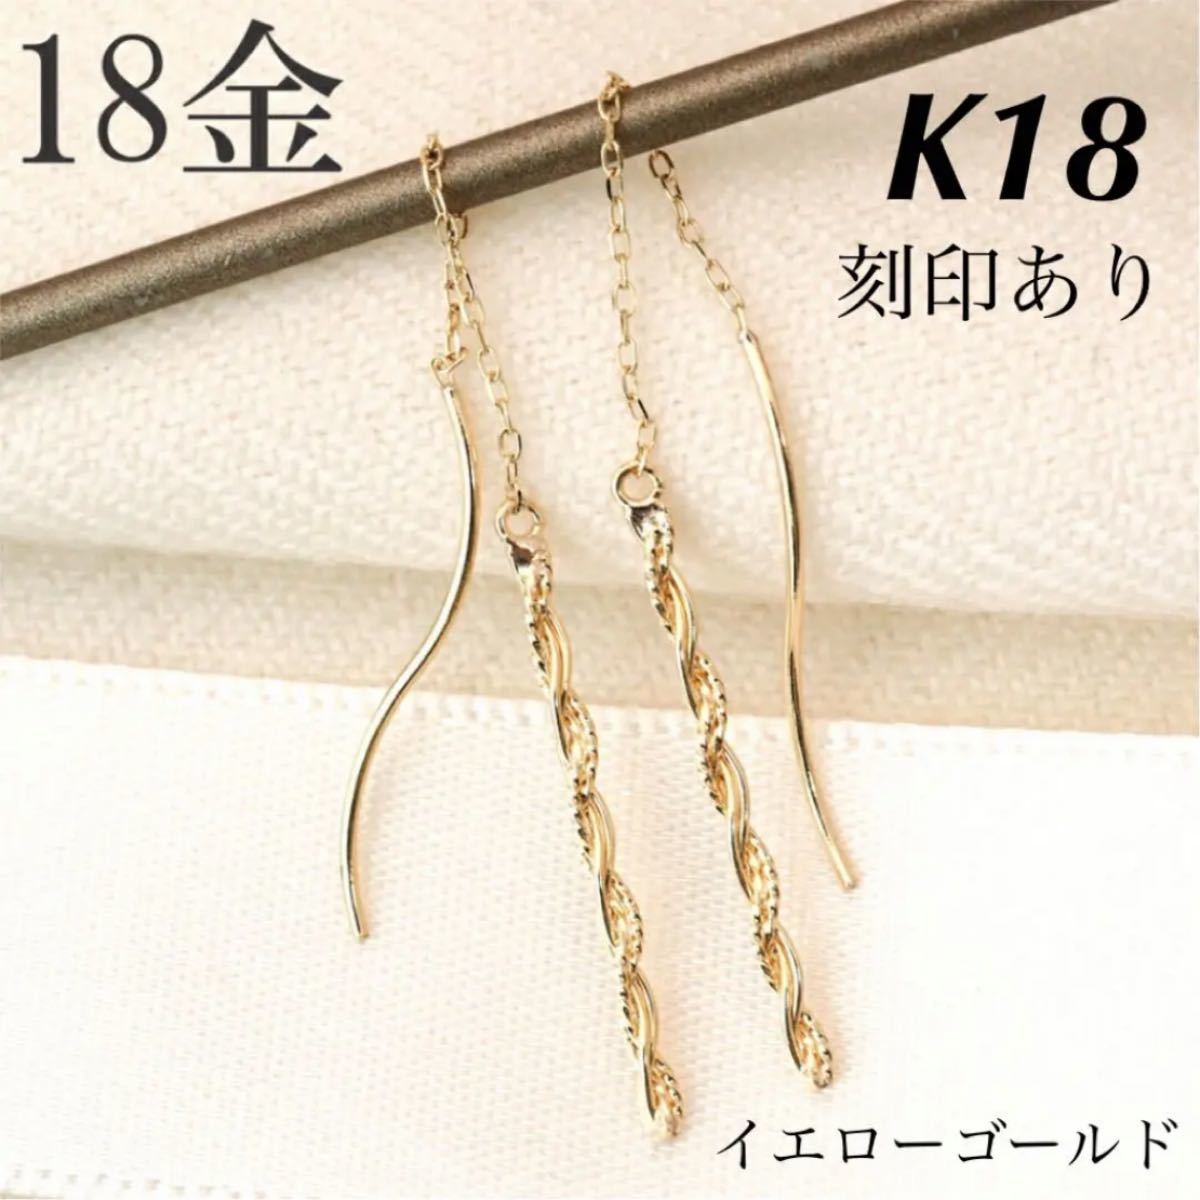 新品 K18 イエローゴールド ロングピアス  アメリカンピアス 18金ピアス 刻印あり 上質 日本製 ペア 2